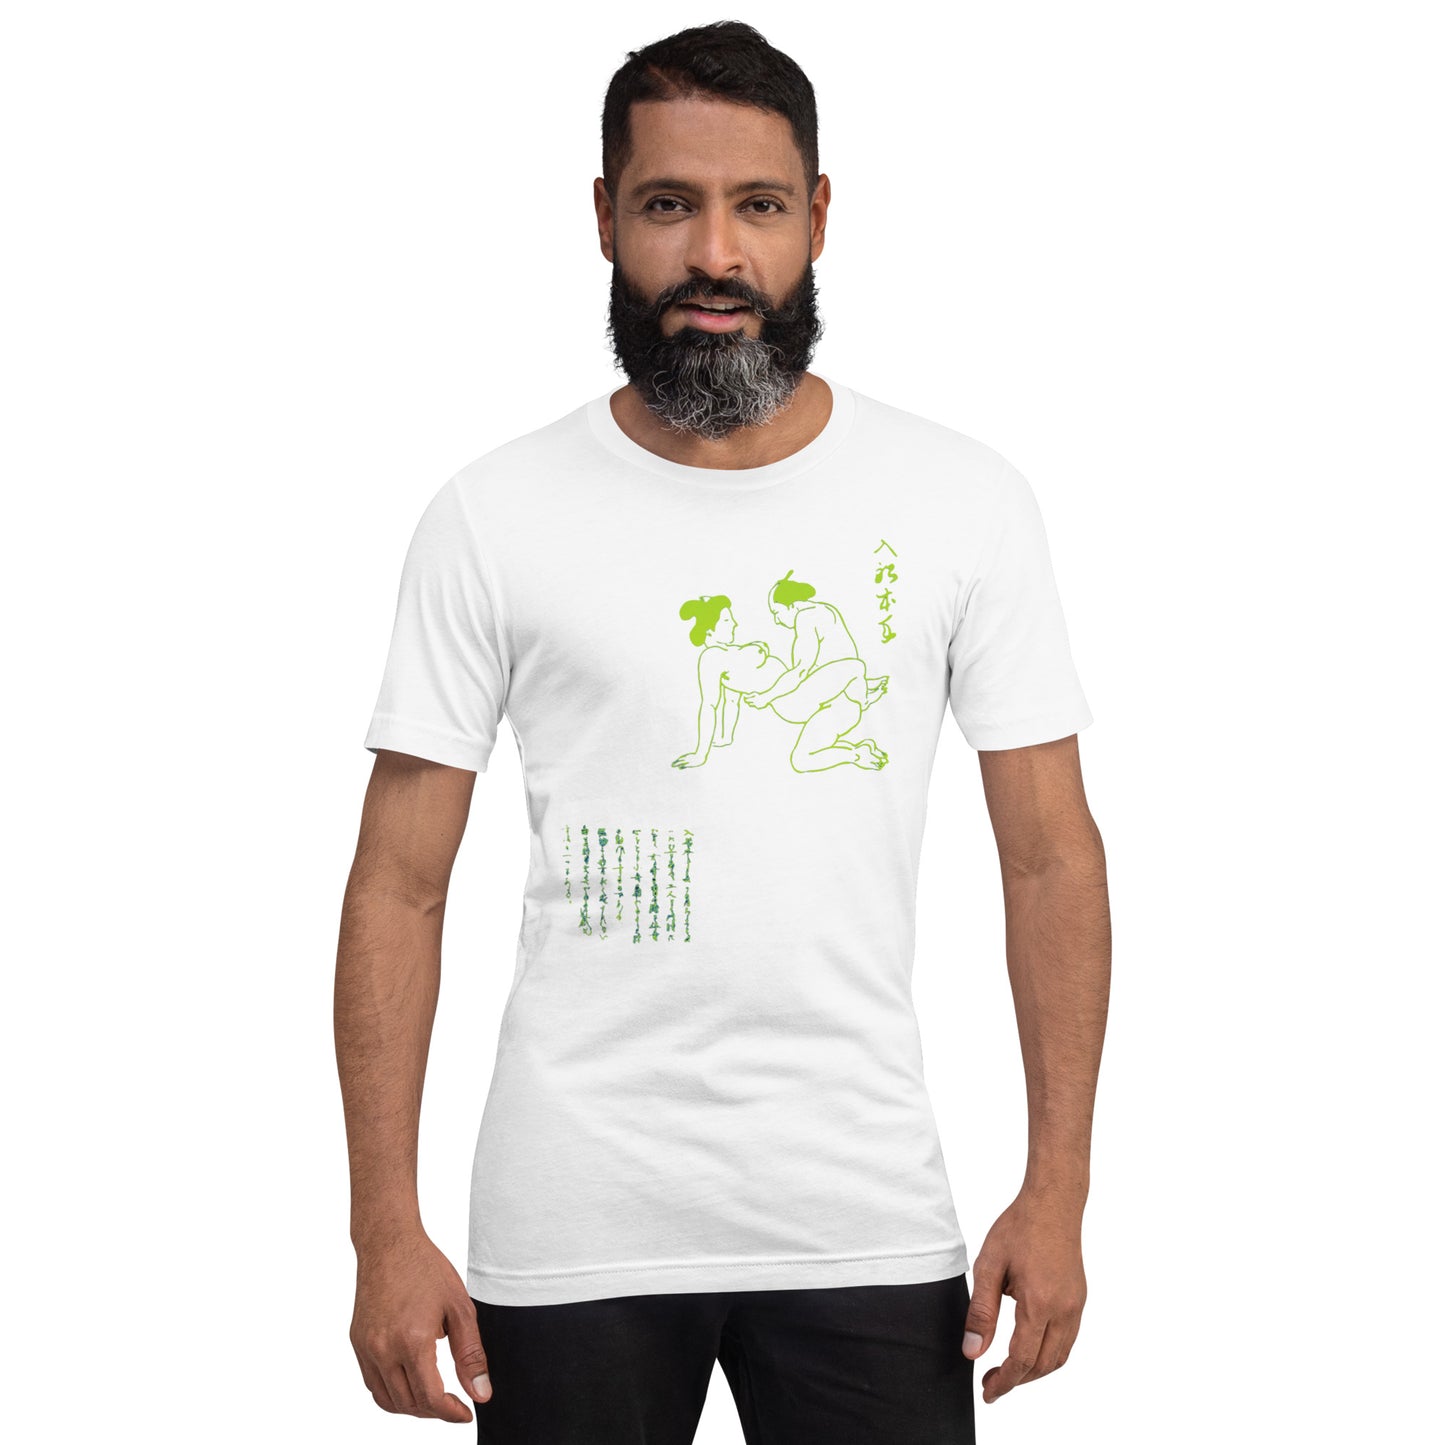 Unisex t-shirt "22 IRIHUNE HONTE" White